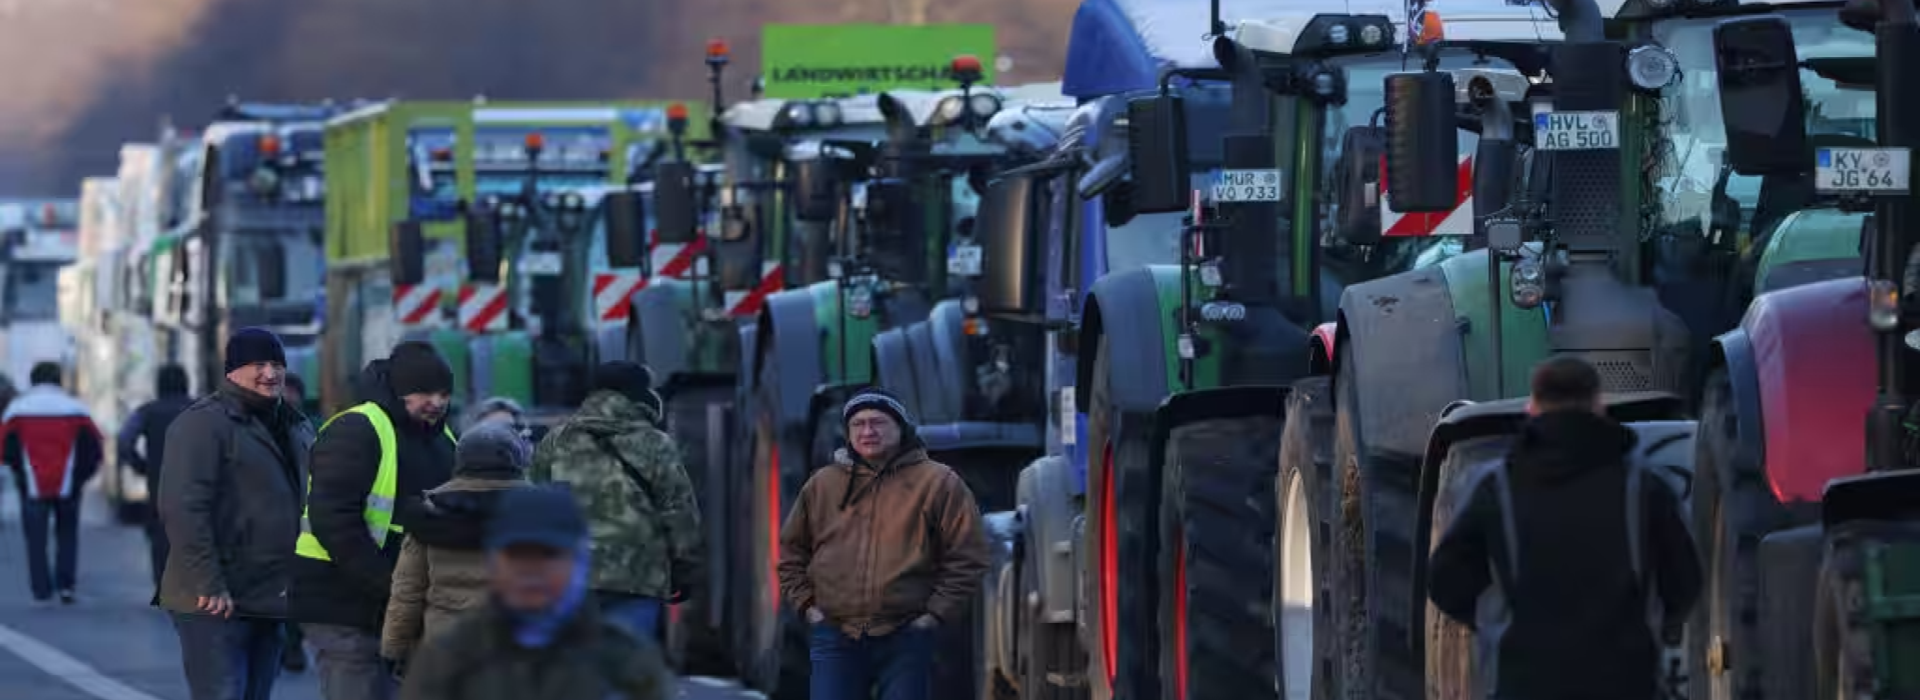 Trattori e forconi bloccano le strade e scaricano letame: Berlino in crisi